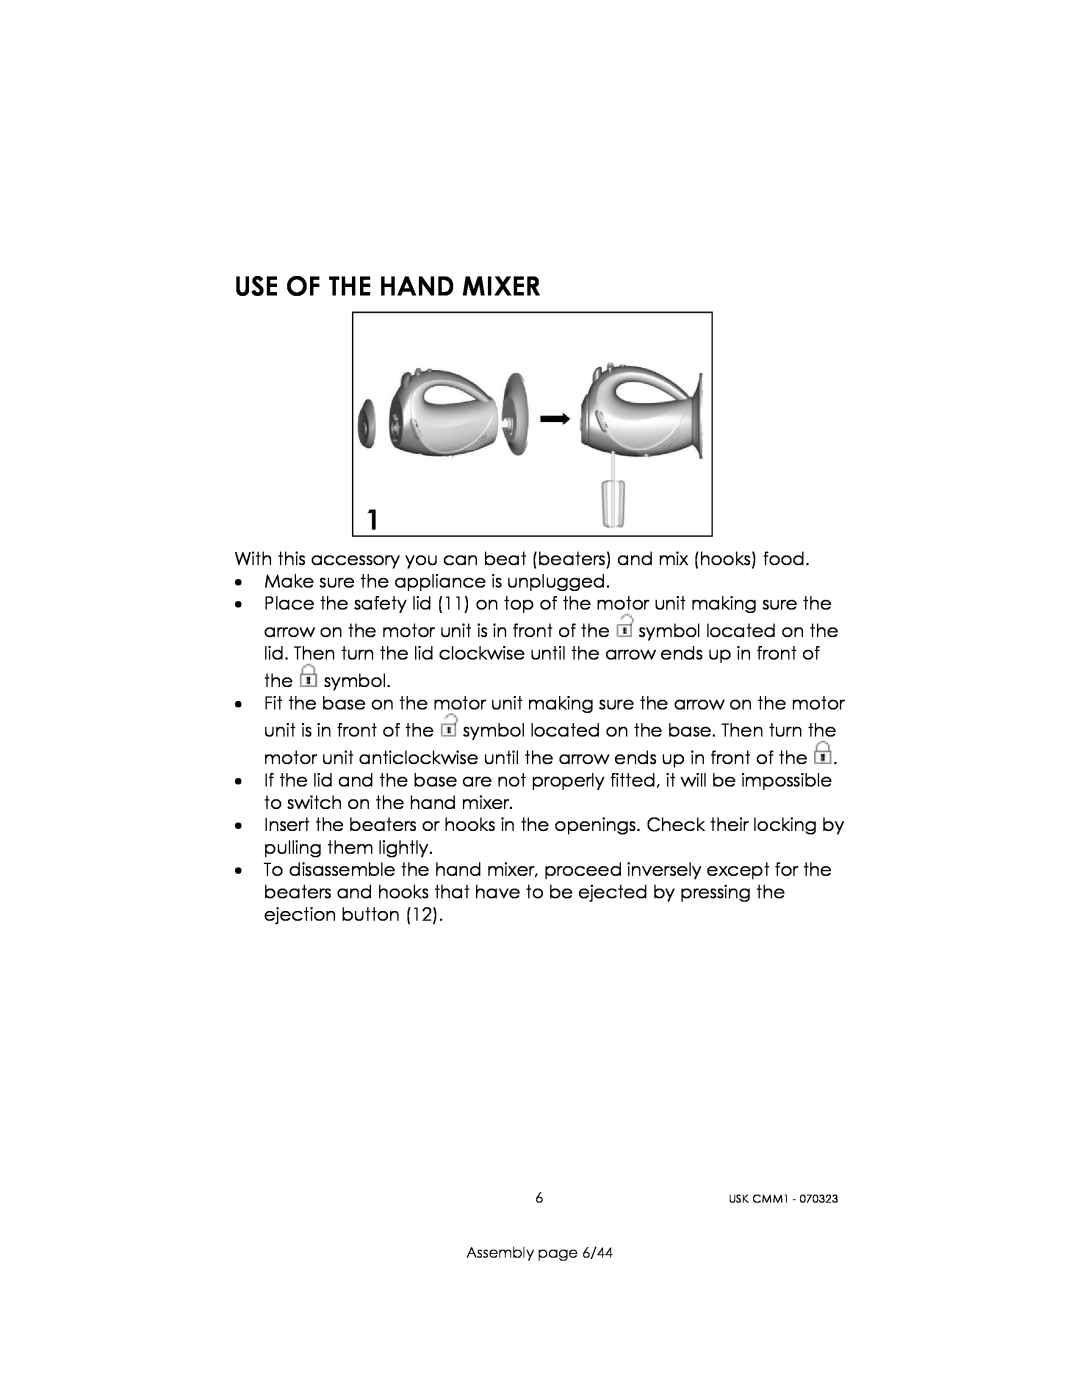 Kalorik USK CMM 1 manual Use Of The Hand Mixer 